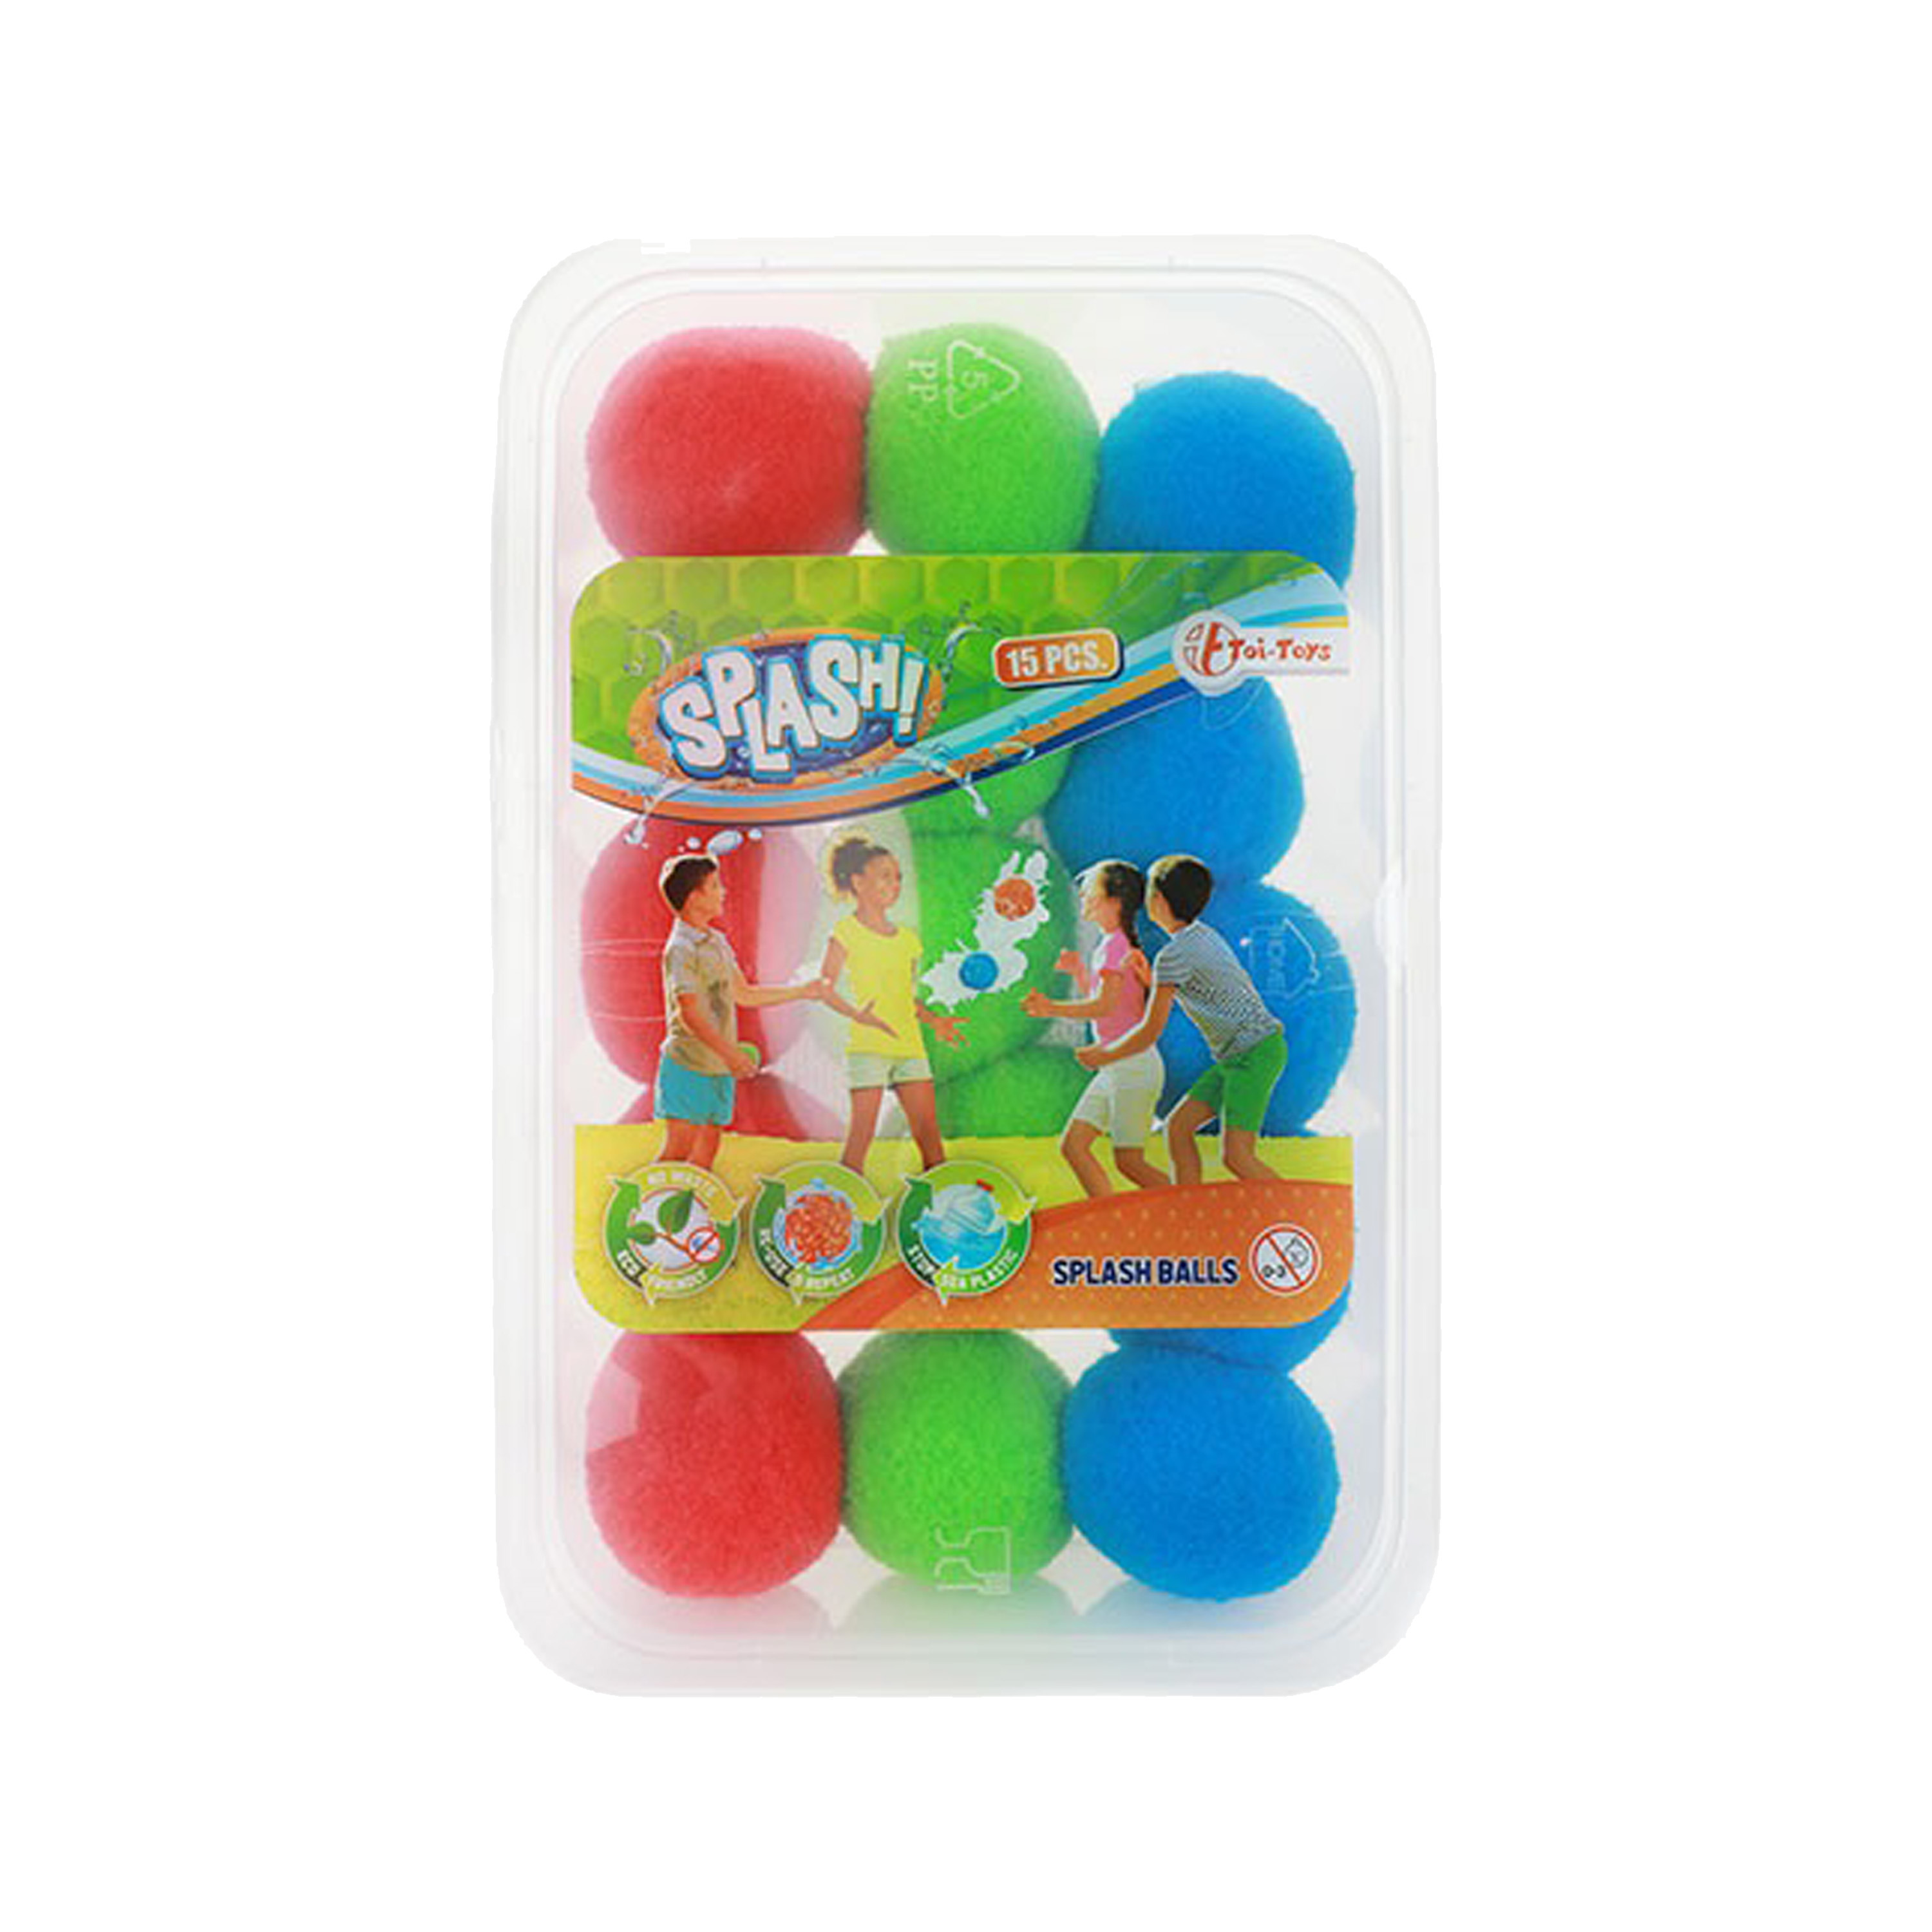 Waterspeelgoed splash ballen 15 stuks herbruikbare waterballonen zomer speelgoed